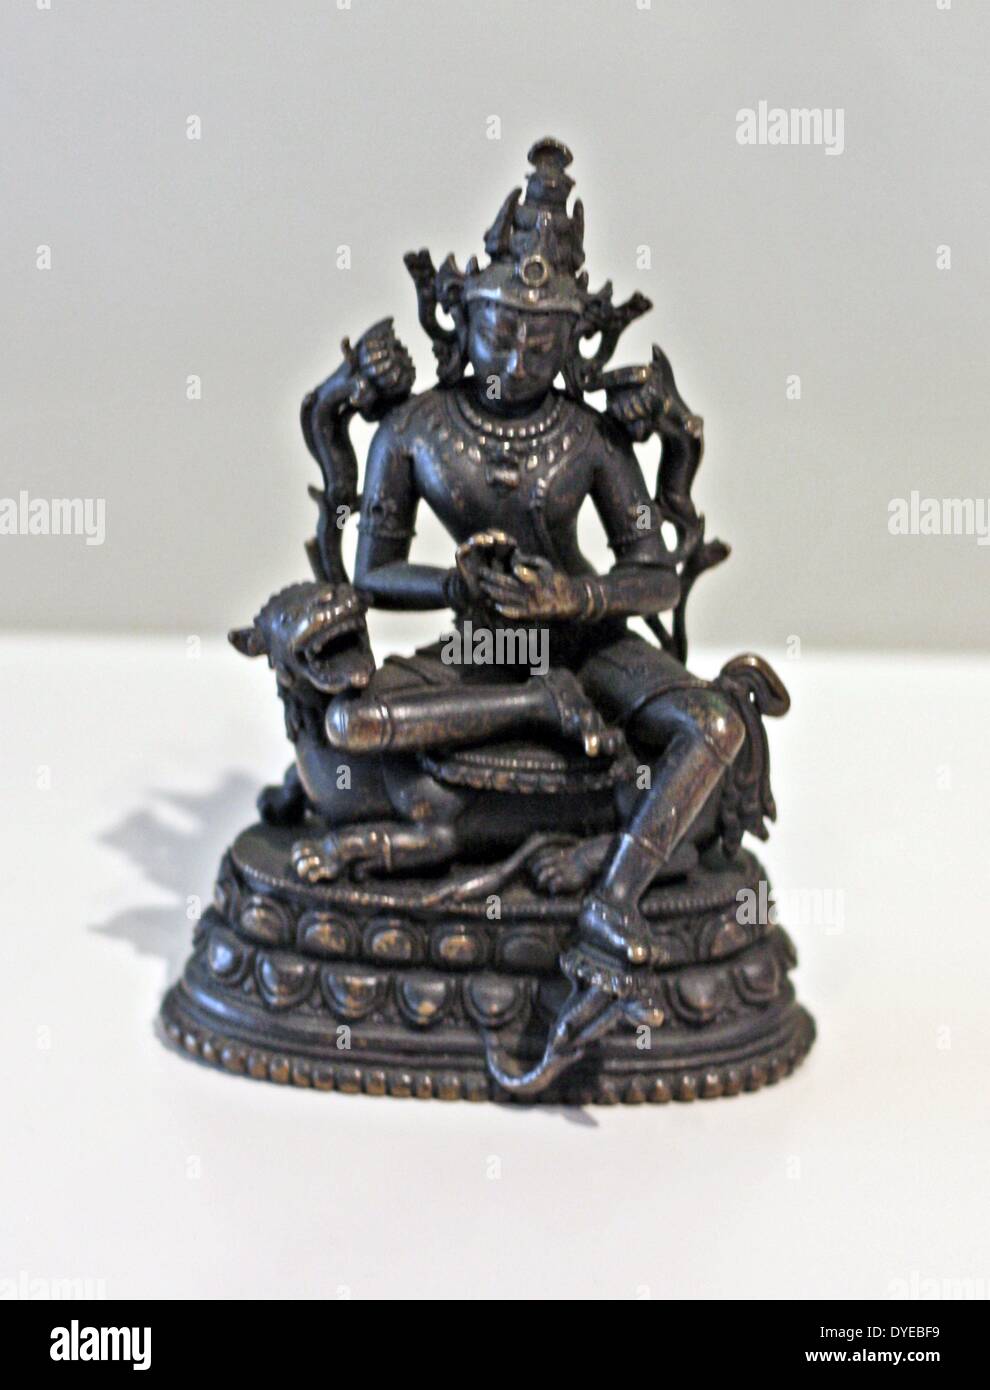 Le bodhisattva Manjushri. L'Inde ou le Bangladesh, le Bengale, 11ème-12ème siècle, bronze, argent. Manjushri est assis sur sa monture, un lion. Sa pose décontractée, avec une jambe pendant vers le bas, s'appelle lolita-esuna et se trouve souvent dans des images de bodhisattvas. Sur le nénuphar bleu à droite de la tête de Manjushri est son attribut - le livre, un symbole de sagesse. Manjushri est de faire le geste de mettre la roue de la doctrine en mouvement. Banque D'Images